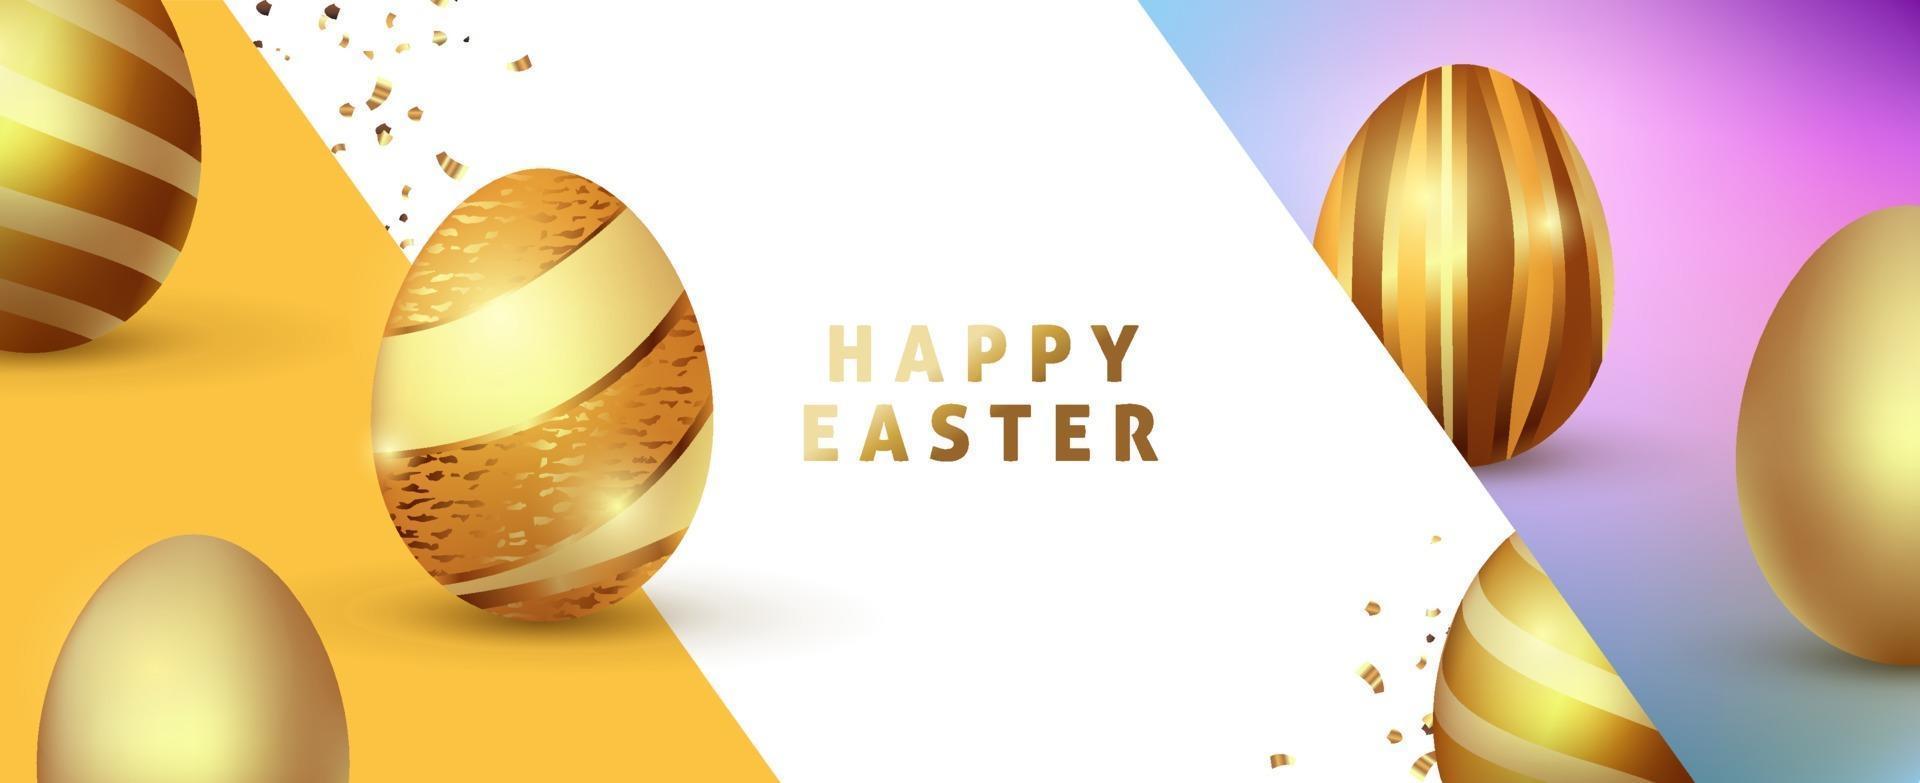 Plantilla de fondo de Pascua con huevos de oro premium de lujo. vector